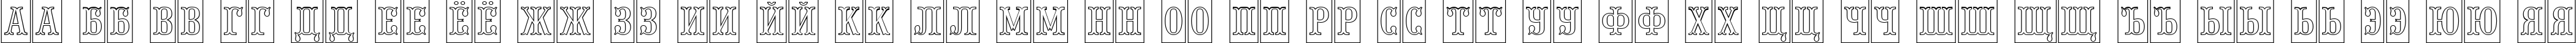 Пример написания русского алфавита шрифтом a_PresentumNrCmOtl